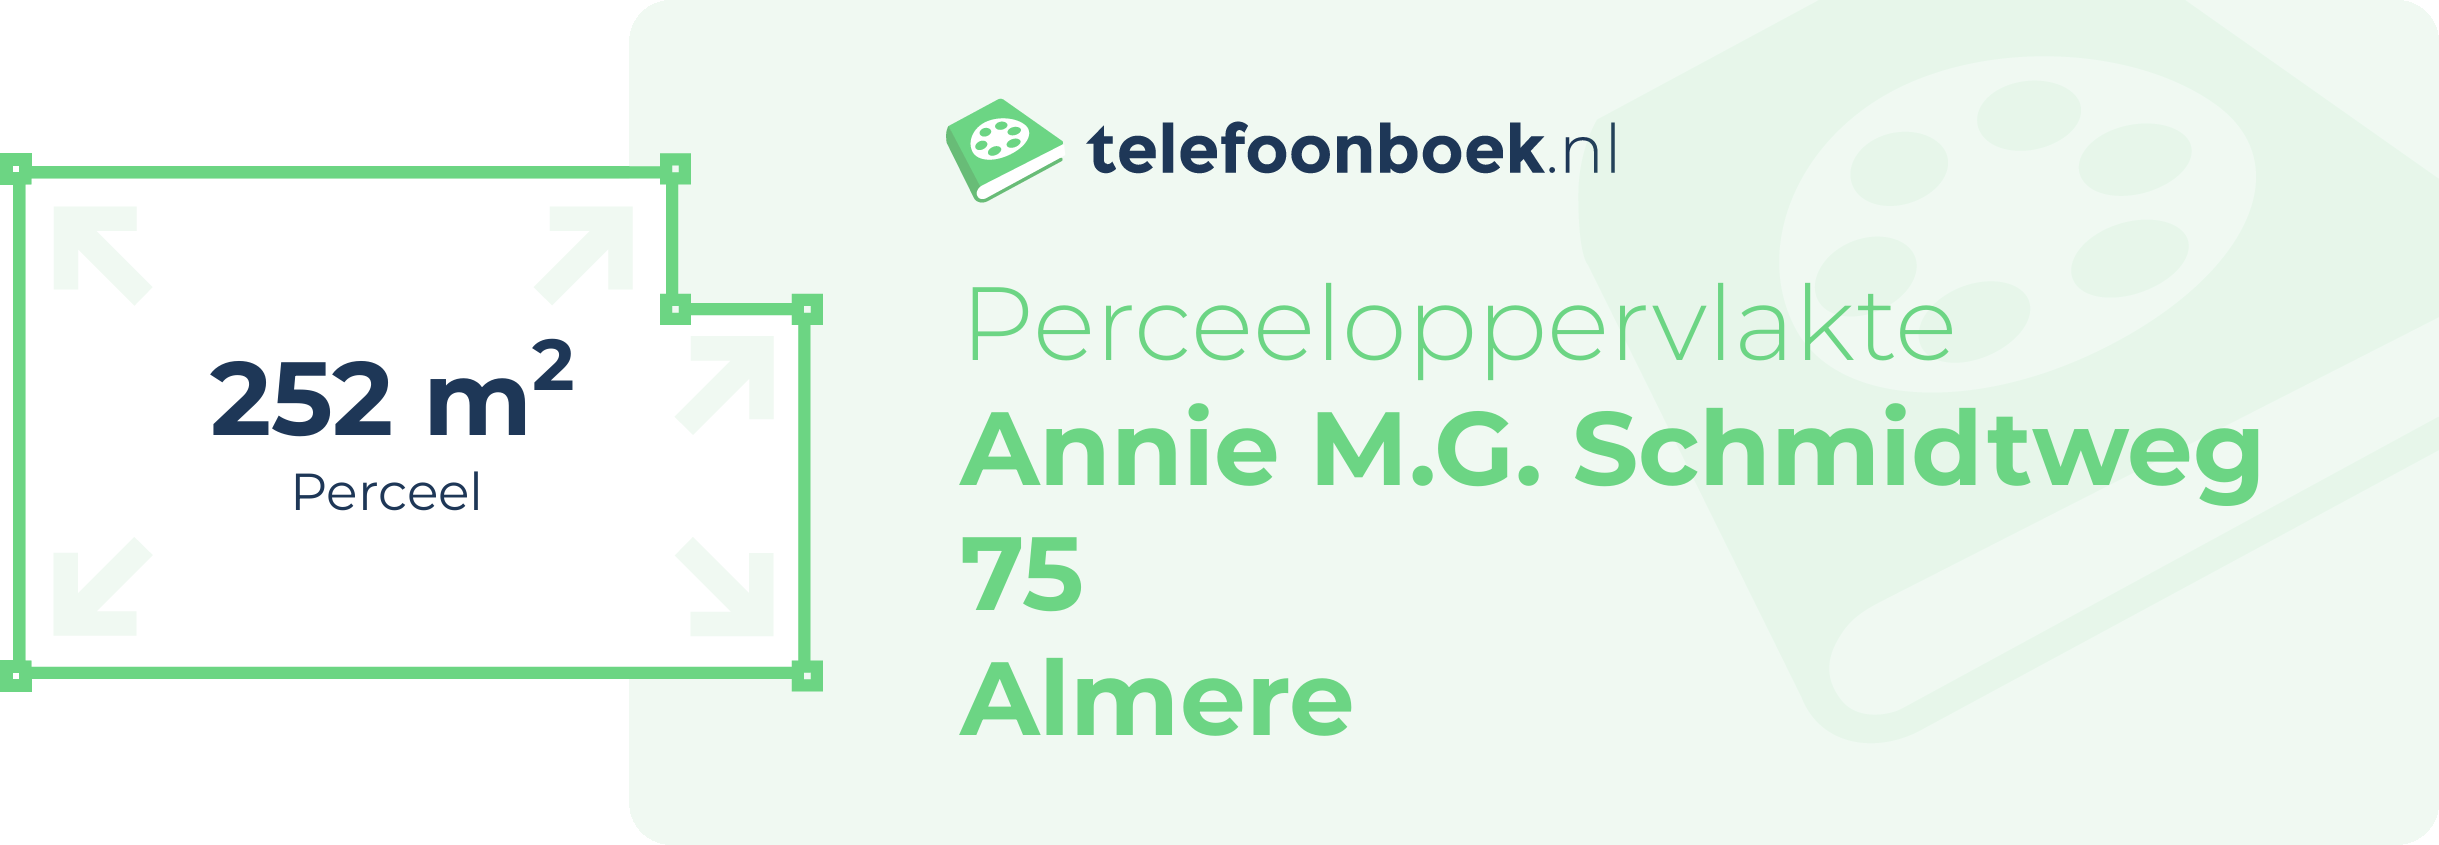 Perceeloppervlakte Annie M.G. Schmidtweg 75 Almere